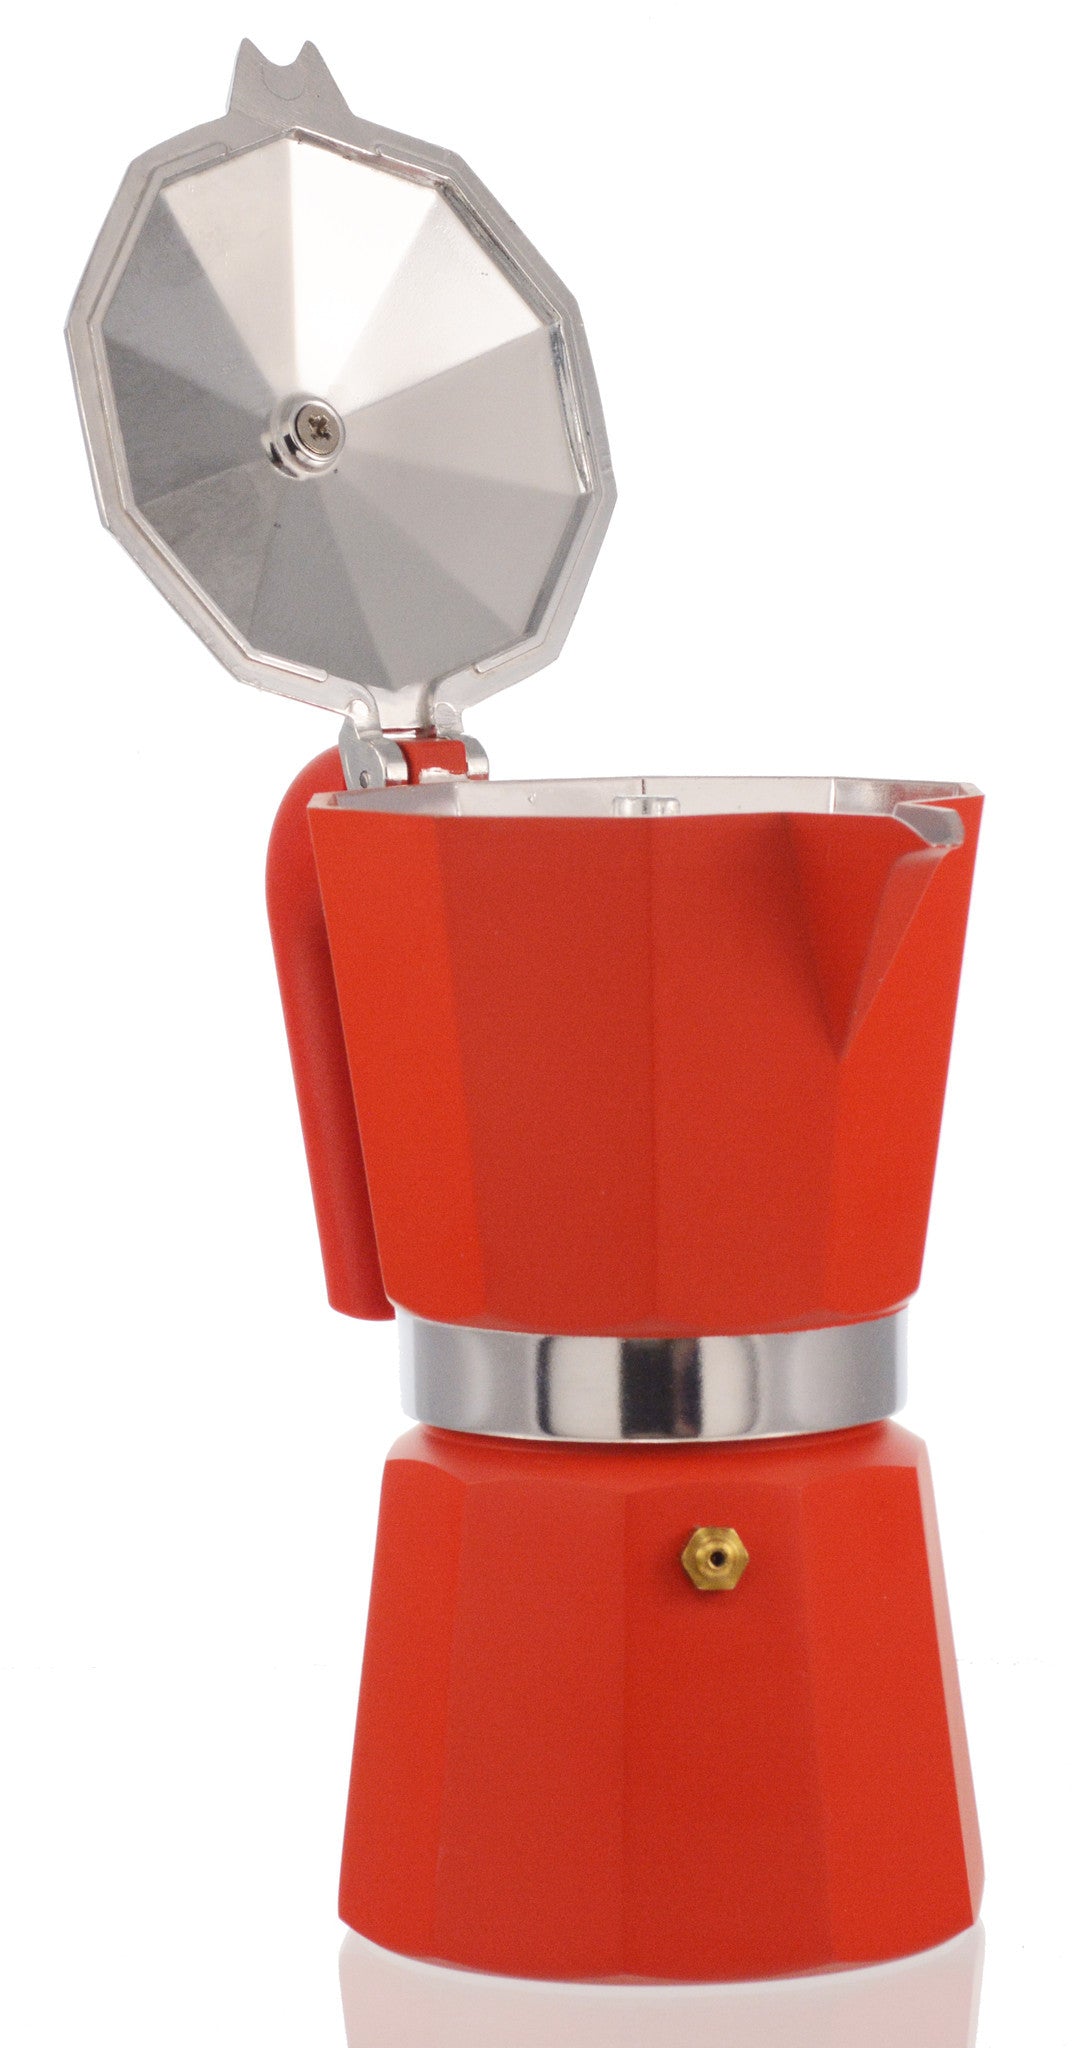 Pedrini Espresso Stove Top Coffee Maker Continental Percolator Single Cup  Red